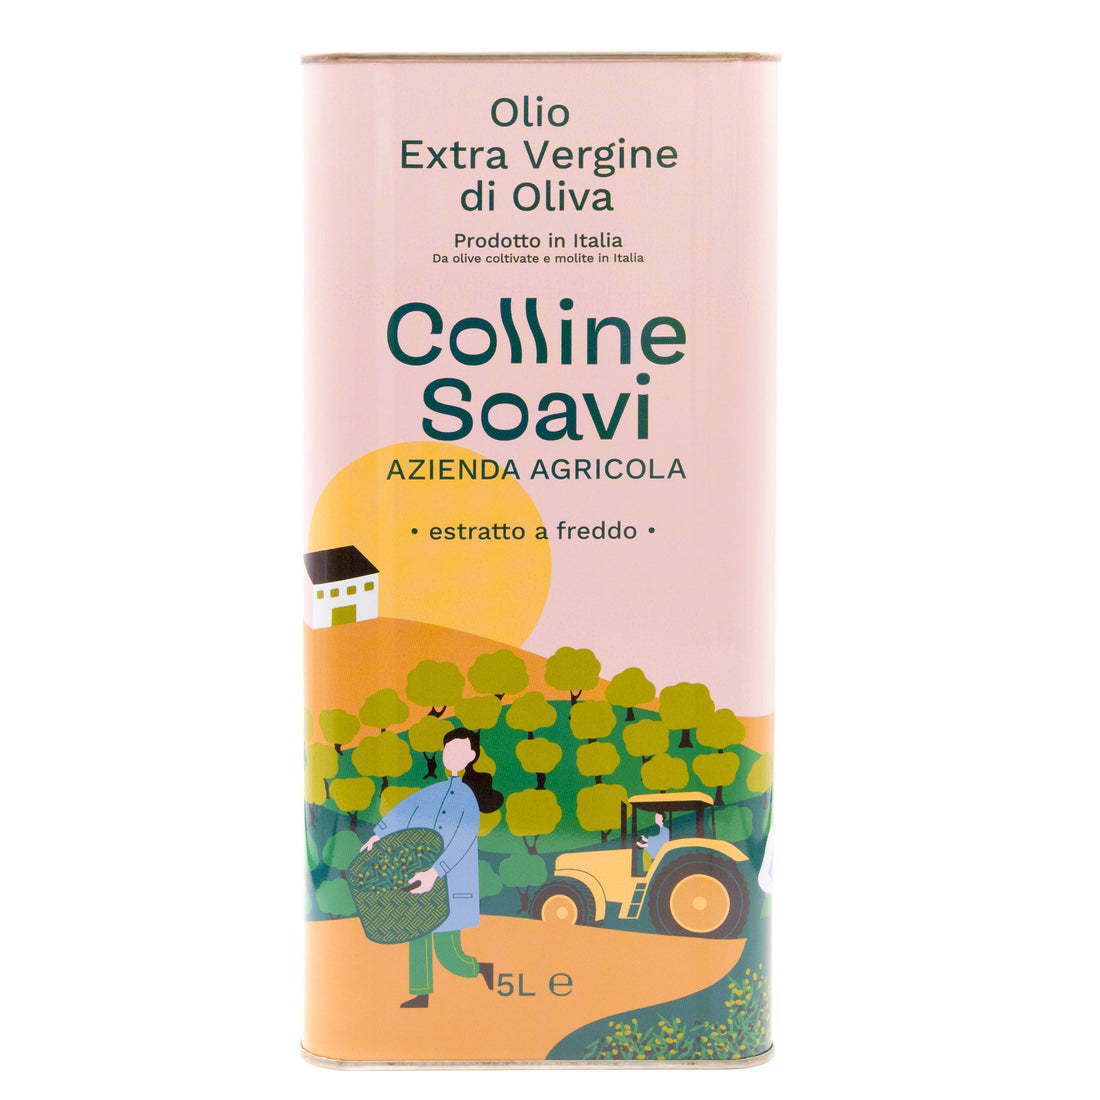 Olio Extra Vergine di Oliva Colline Soavi, Confezione di 2 Latte da 5L - 2023/24